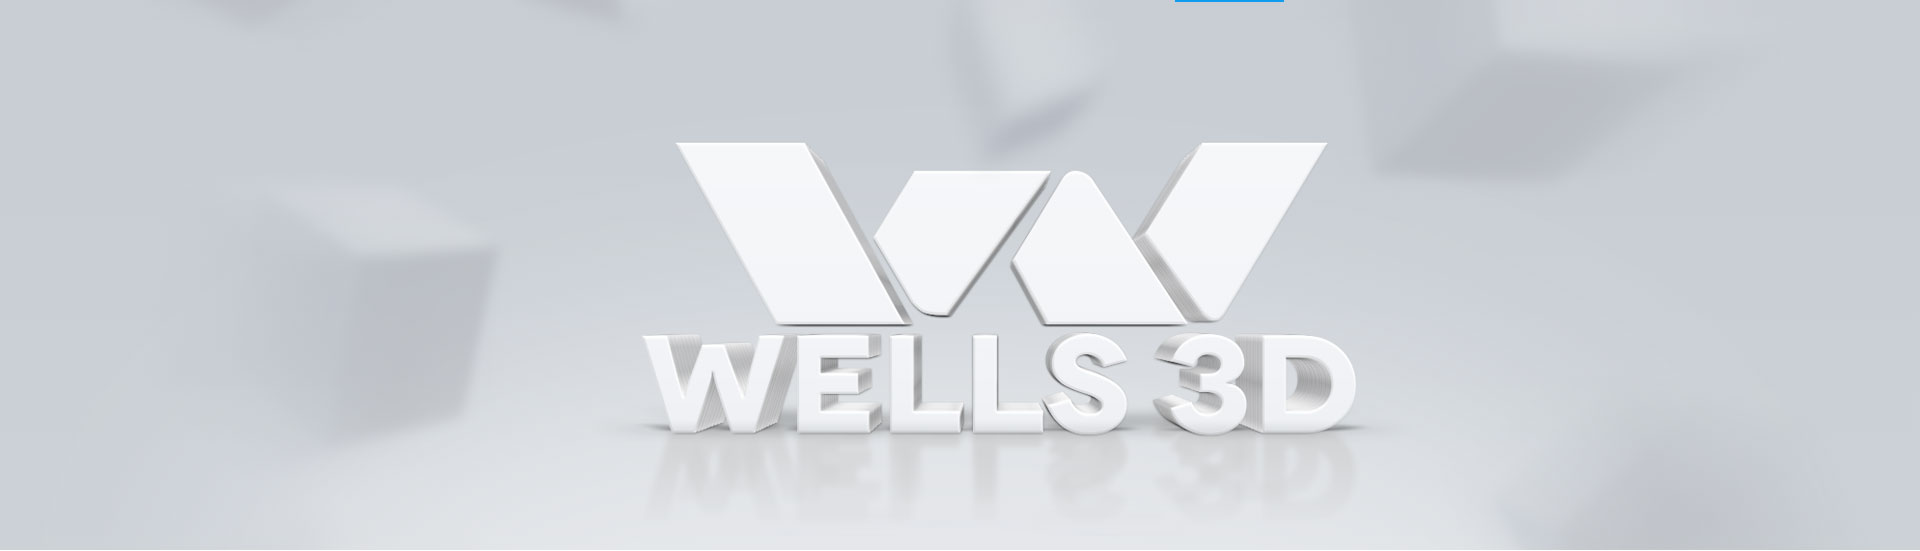 wells3d-banner